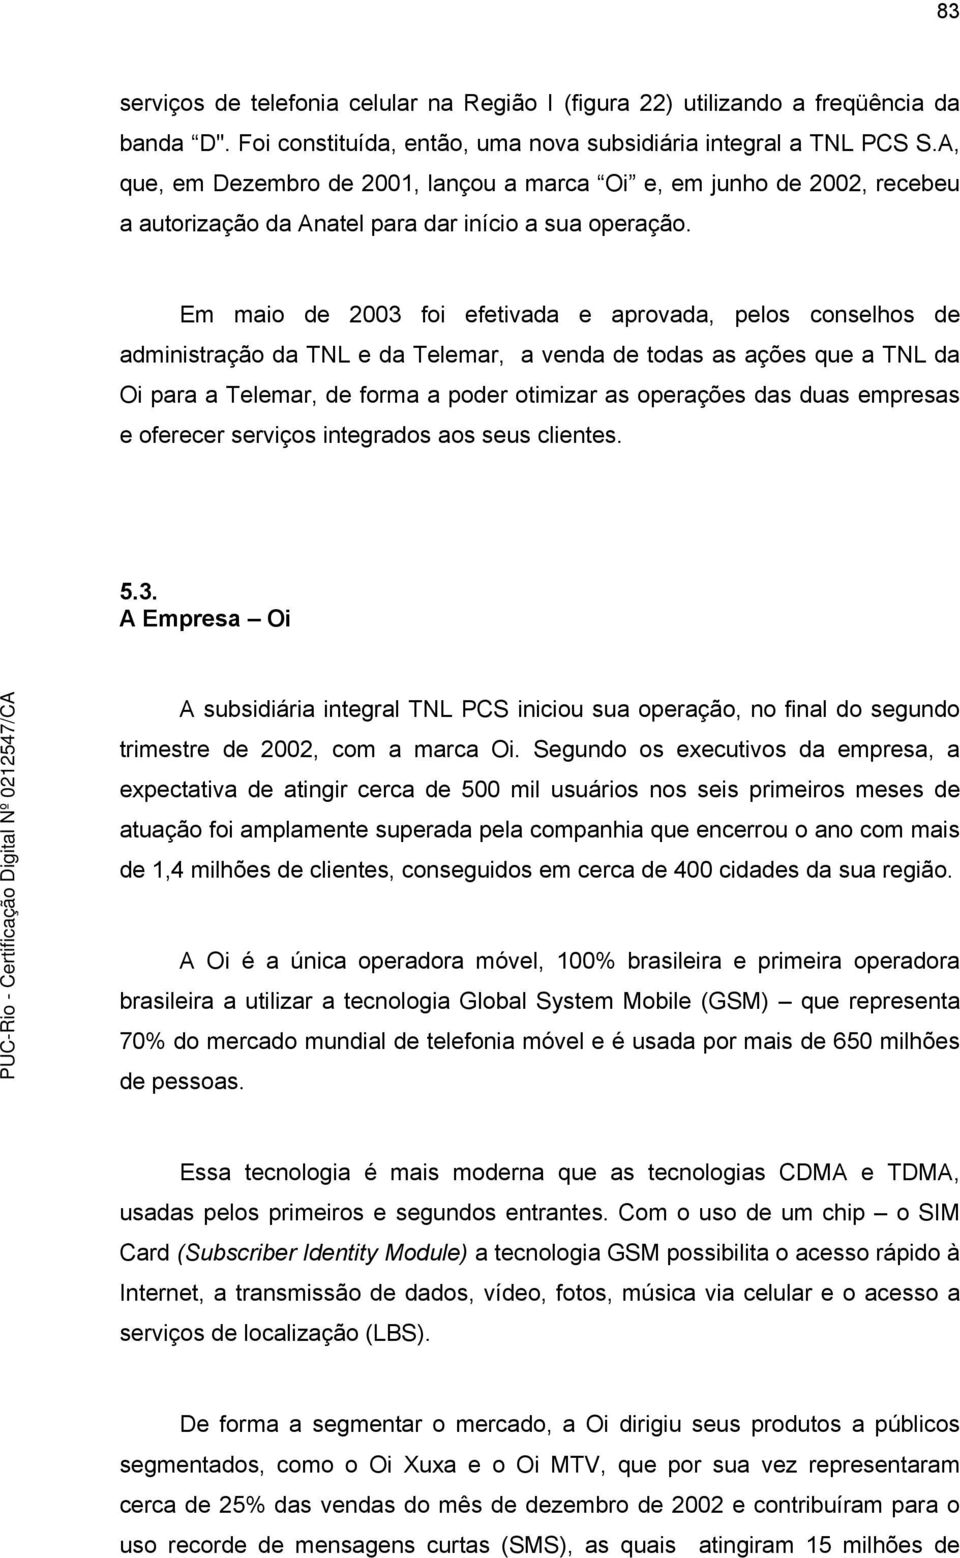 Em maio de 2003 foi efetivada e aprovada, pelos conselhos de administração da TNL e da Telemar, a venda de todas as ações que a TNL da Oi para a Telemar, de forma a poder otimizar as operações das